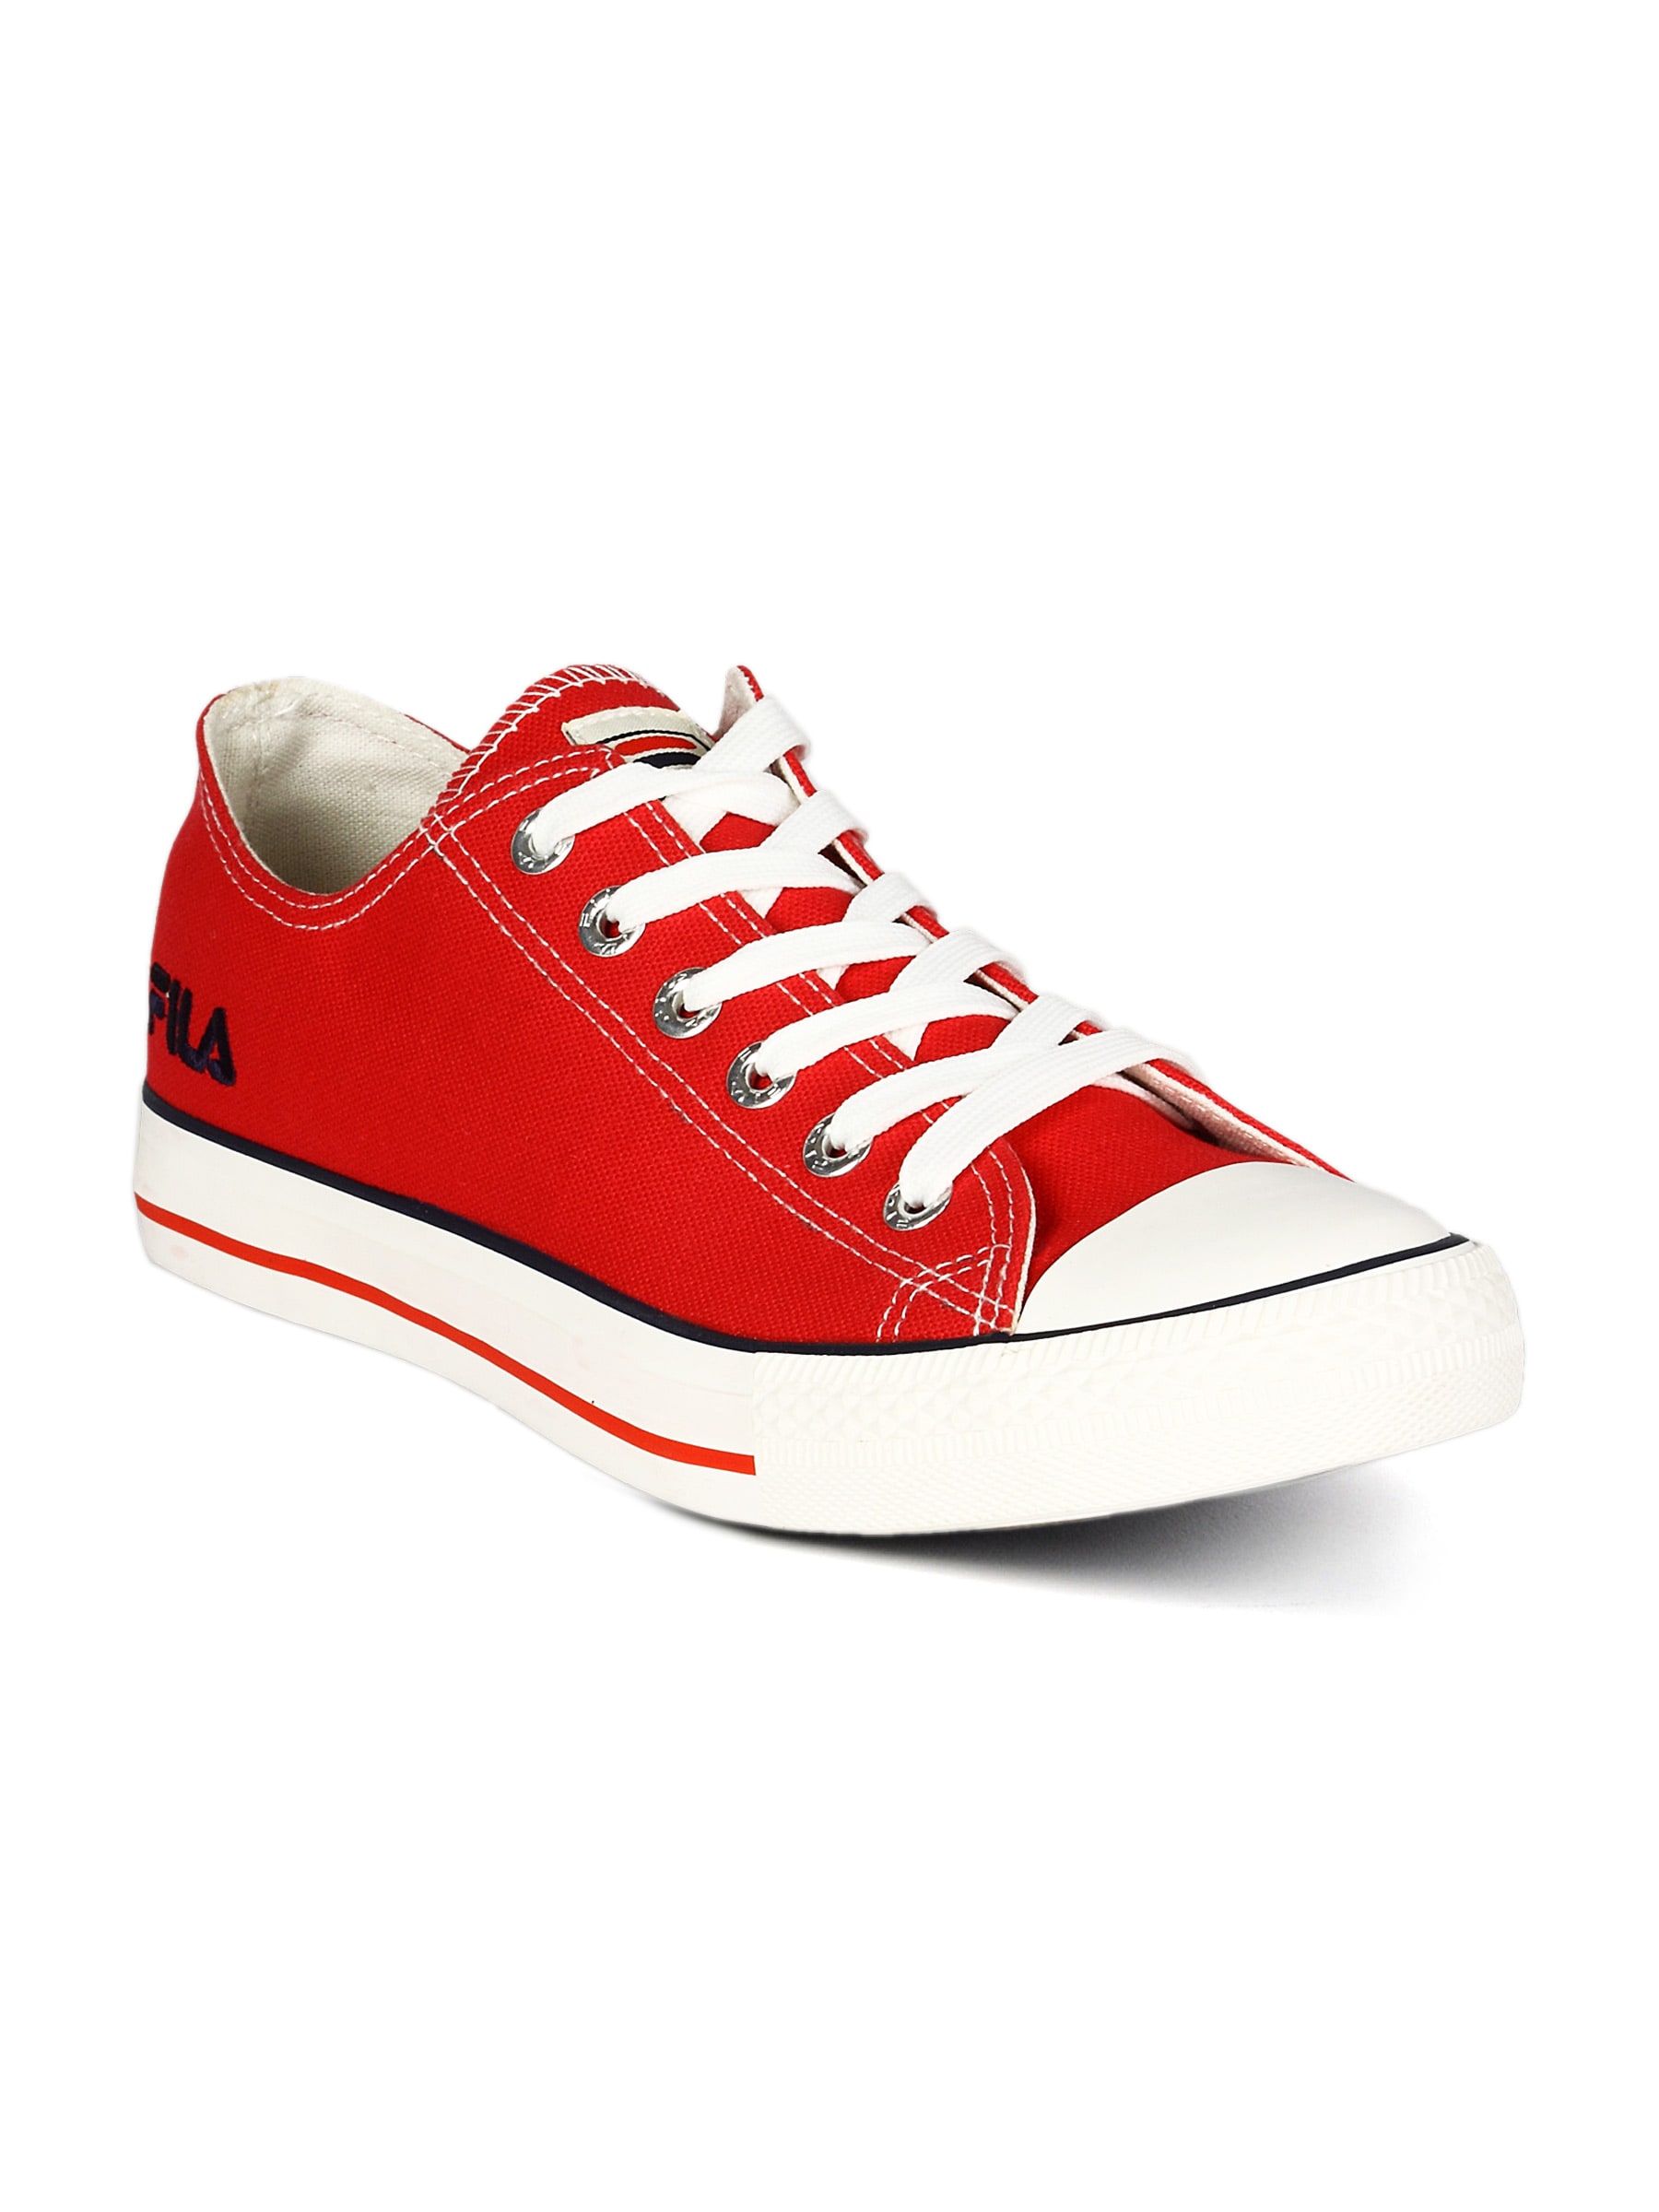 Fila Men's Basic Low Red Shoe